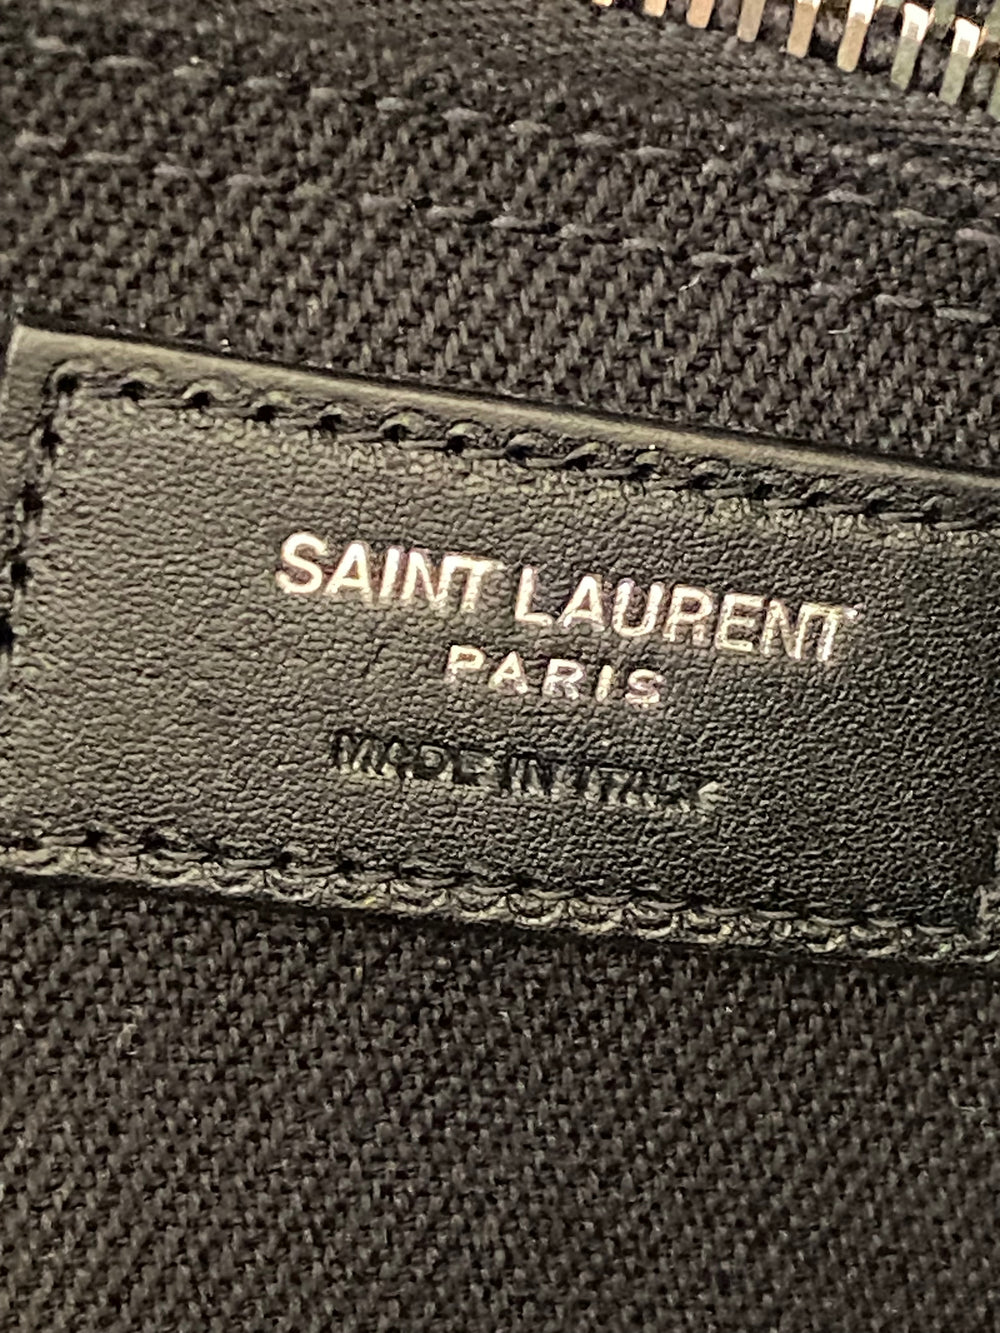 Yves Saint Laurent Rive Gauche Black Canvas Tote Bag (excellent)